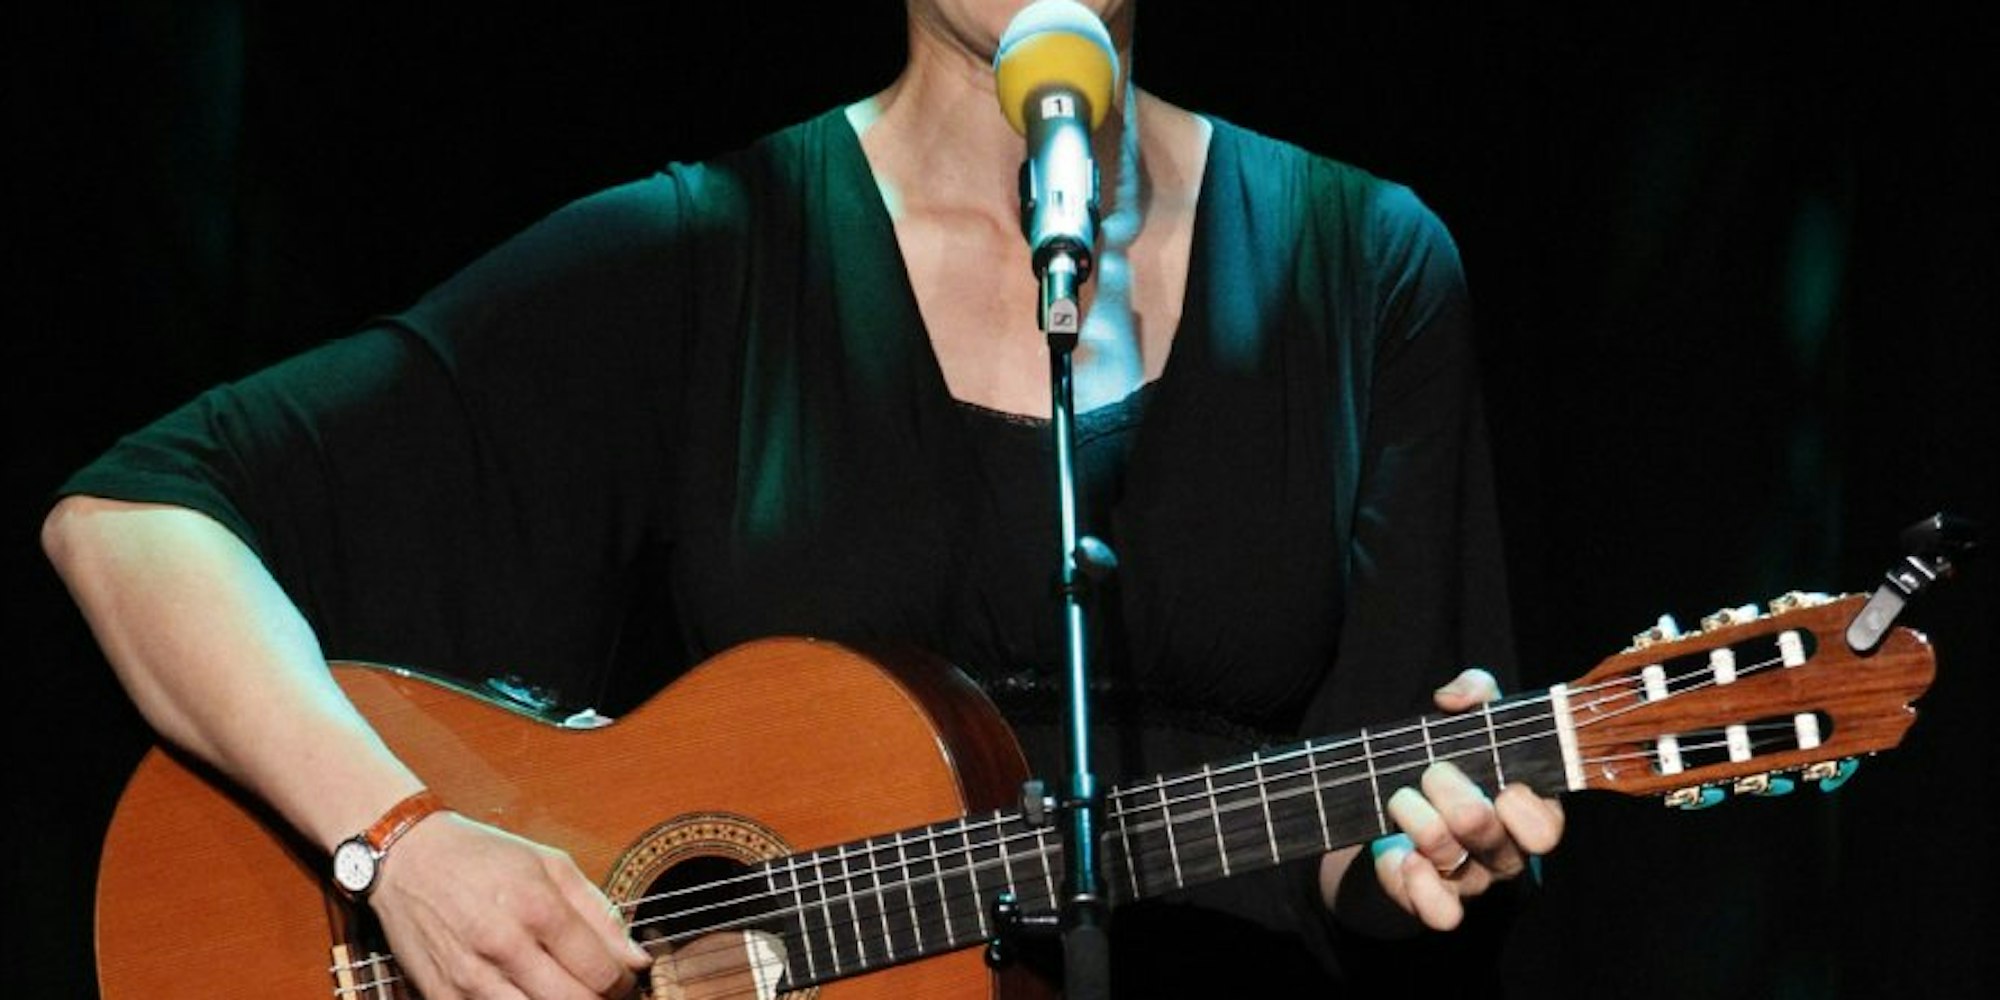 Martina Schwarzmann auf der Bühne.